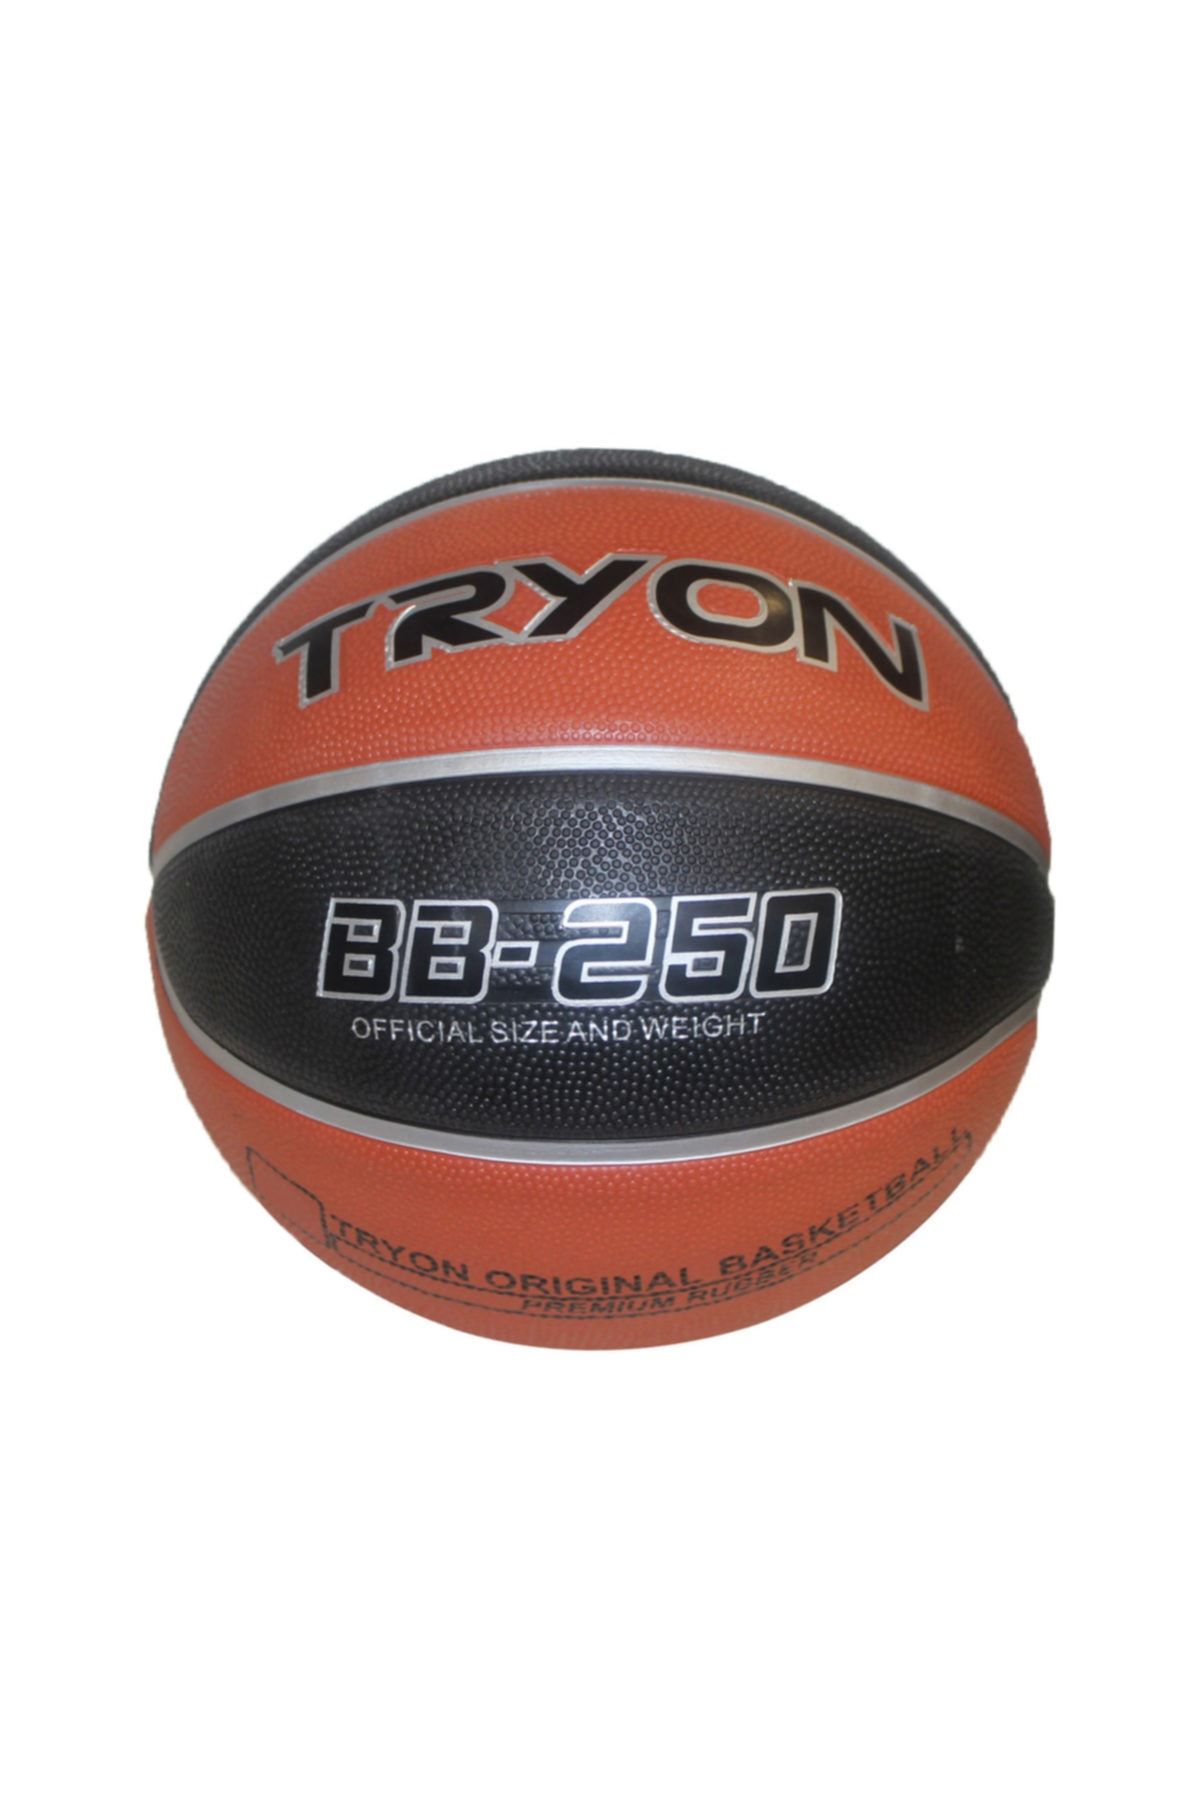 TRYON Basketbol Topu Bb-250 Unisex